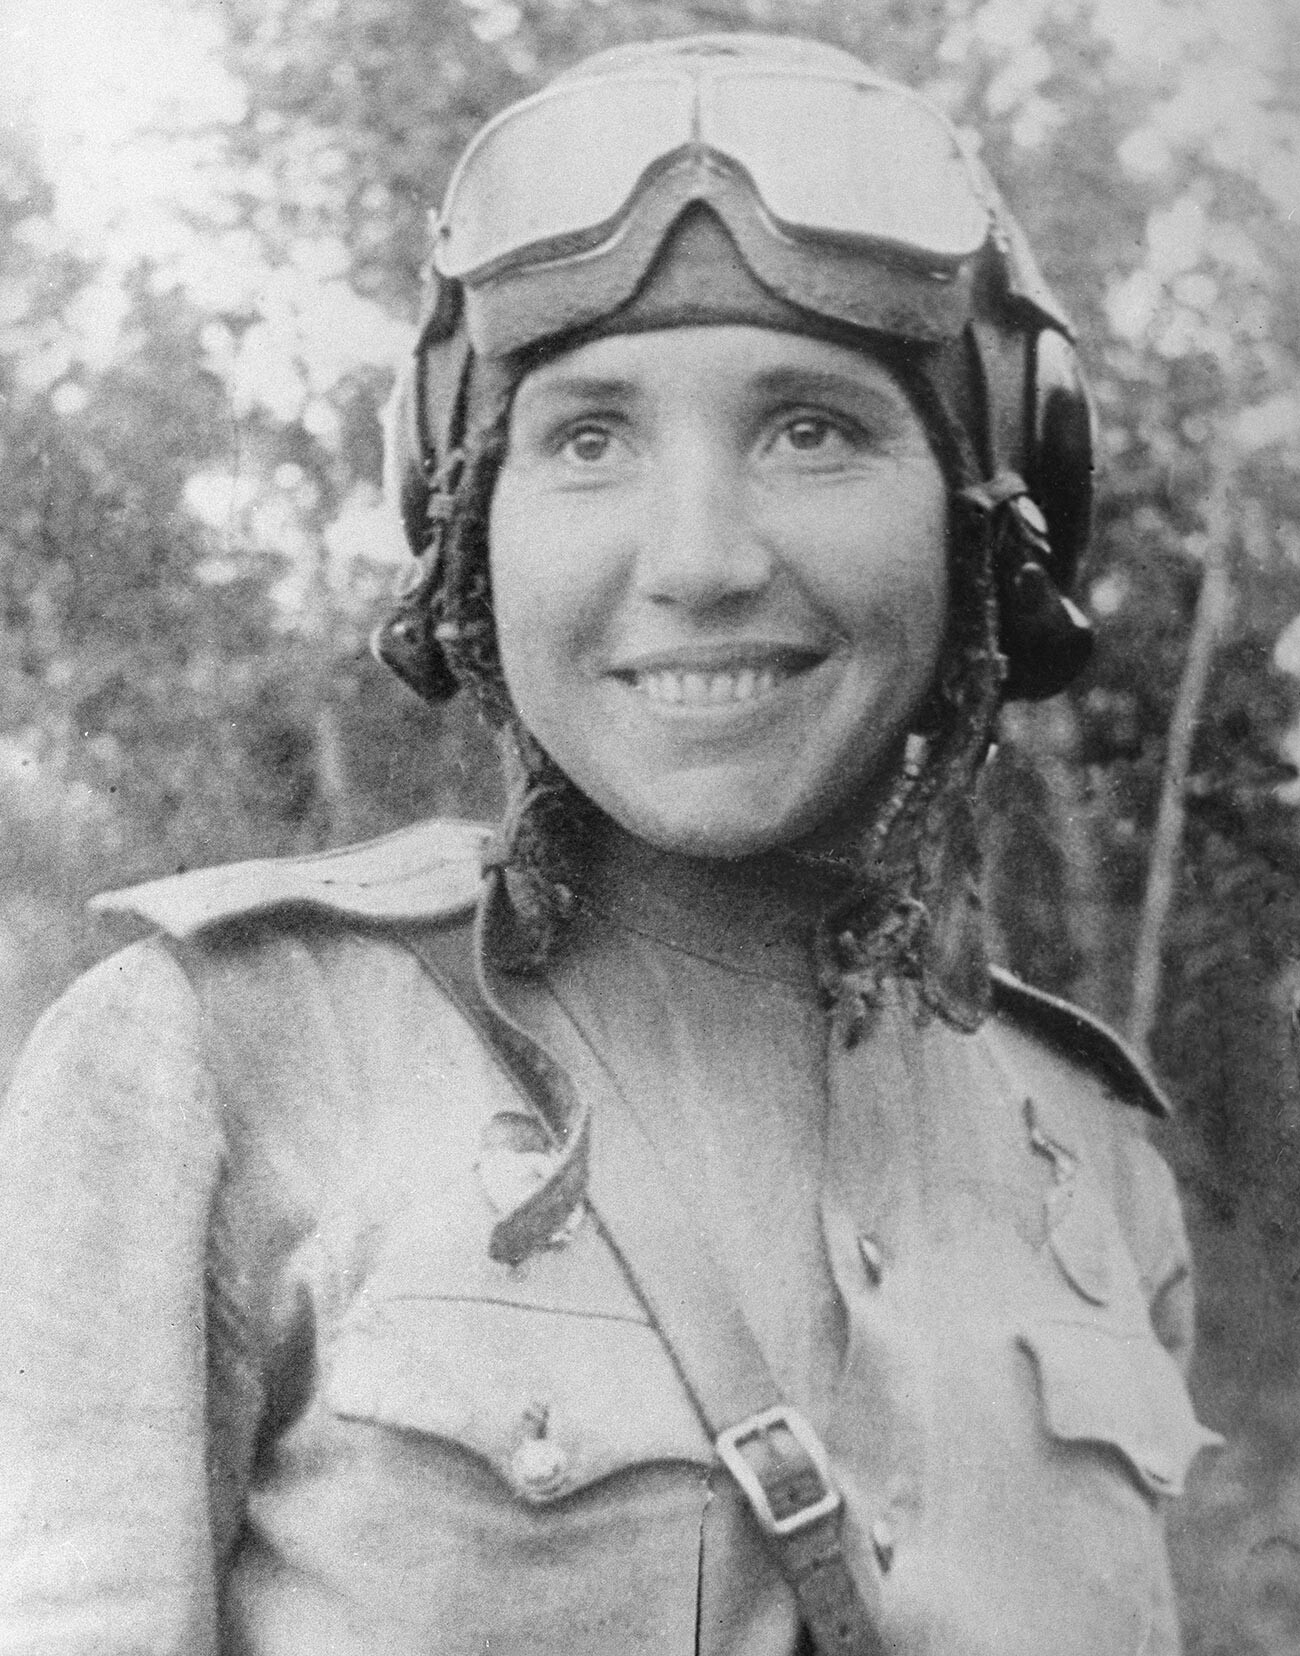 Велики отаџбински рат 1941-1945. Антонина Лебедева, пилот ловачке авијације. Погинула у јулу 1943. у селу Виползово код Курска. Ратовала у саставу 586. женског ловачког авијацијског пука заједно са Агнијом Пољанцевом.